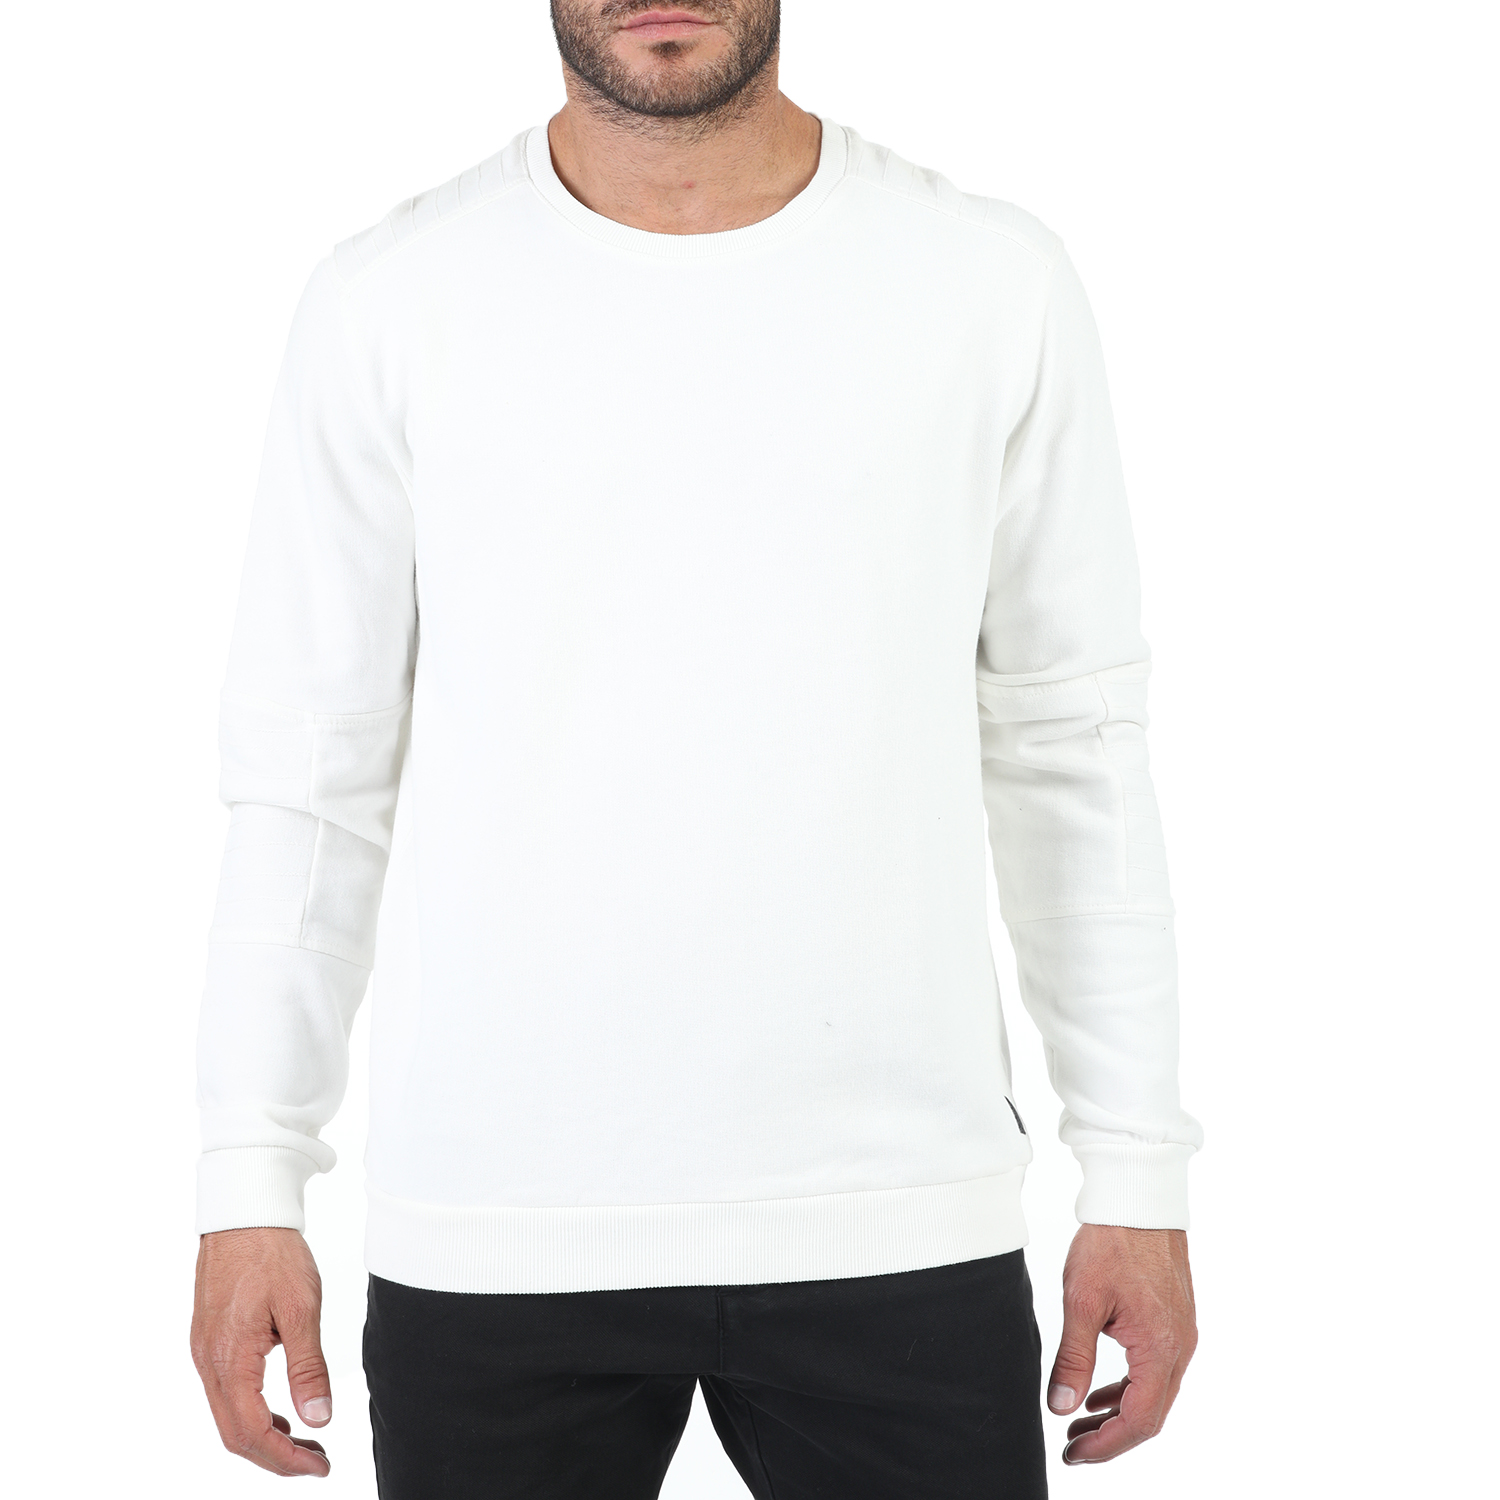 Ανδρικά/Ρούχα/Φούτερ/Μπλούζες DIRTY LAUNDRY - Ανδρική μπλούζα φούτερ DIRTY LAUNDRY λευκή